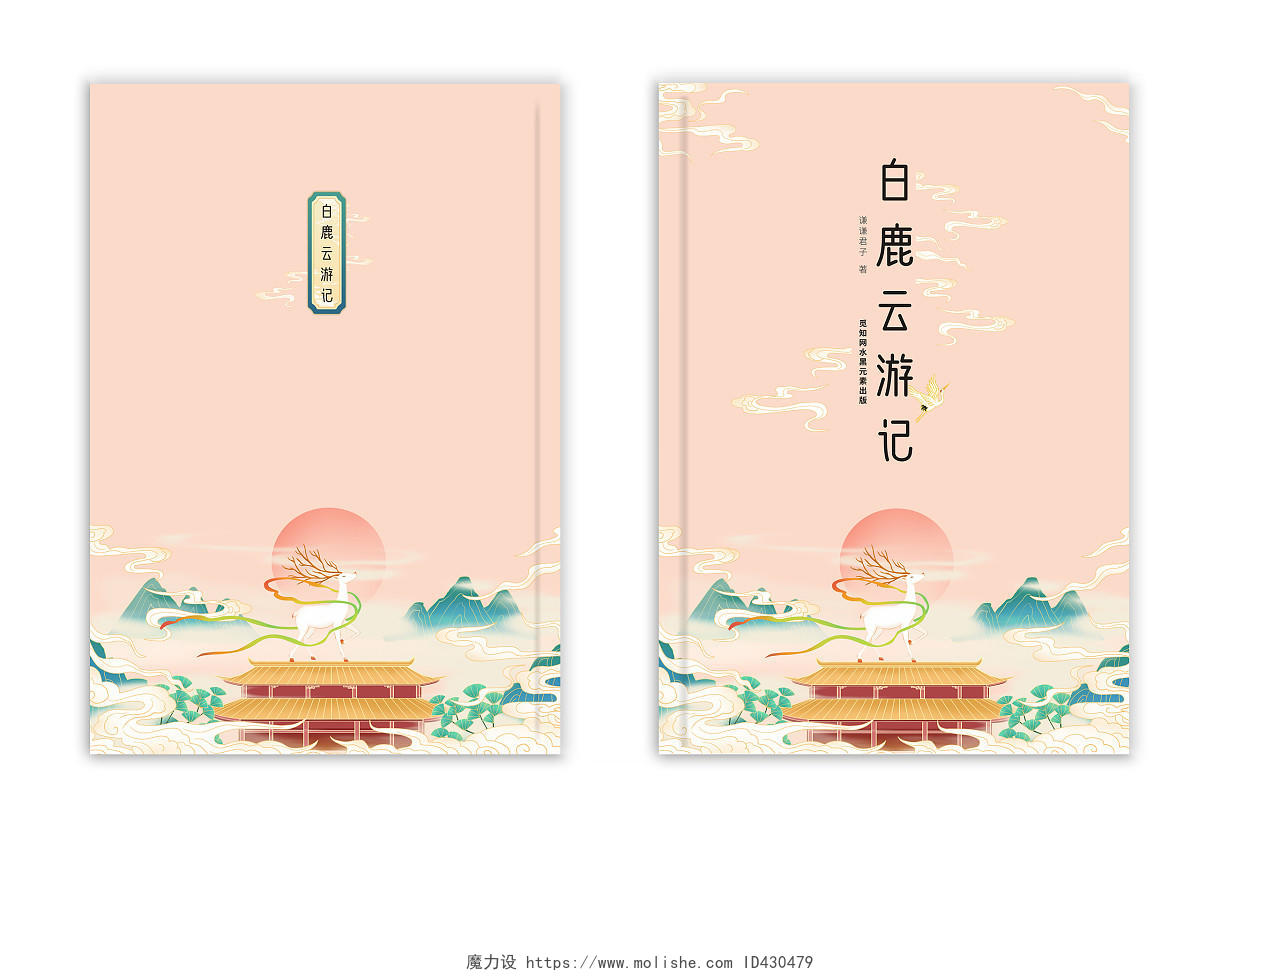 粉红色唯美古风手绘插画白鹿云游记画册书籍封面